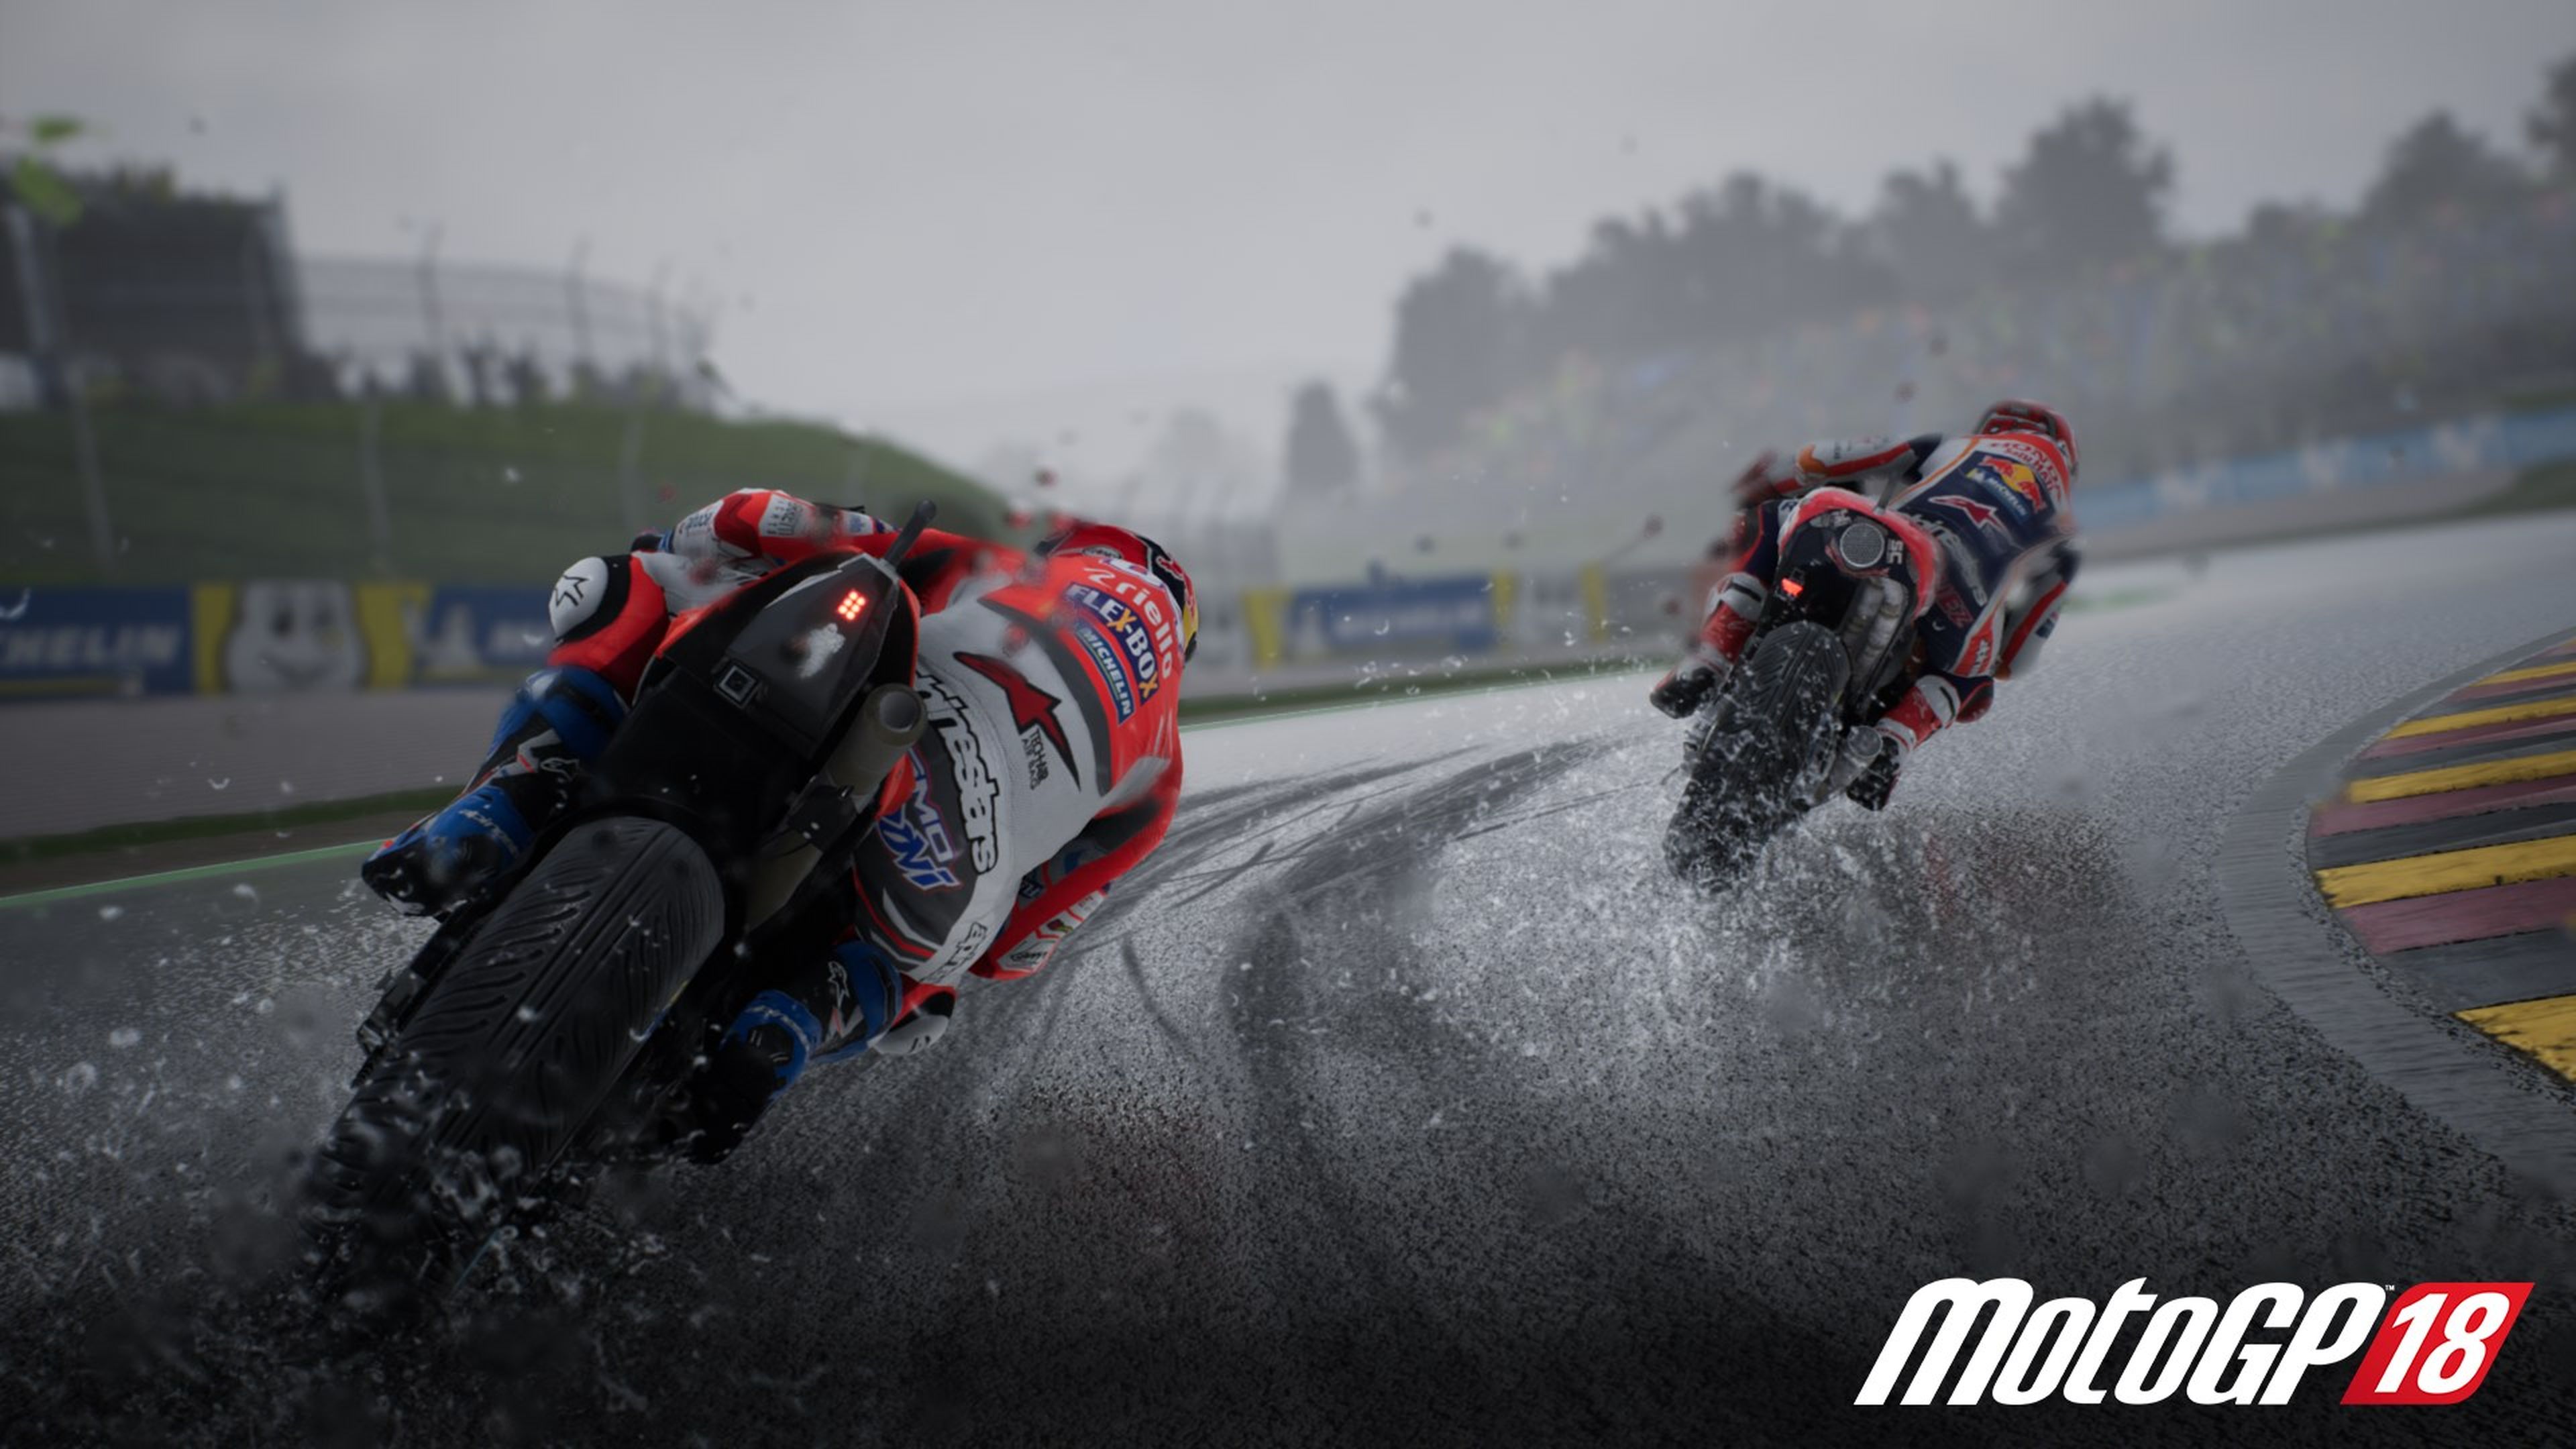 MotoGP 18, juego de motos